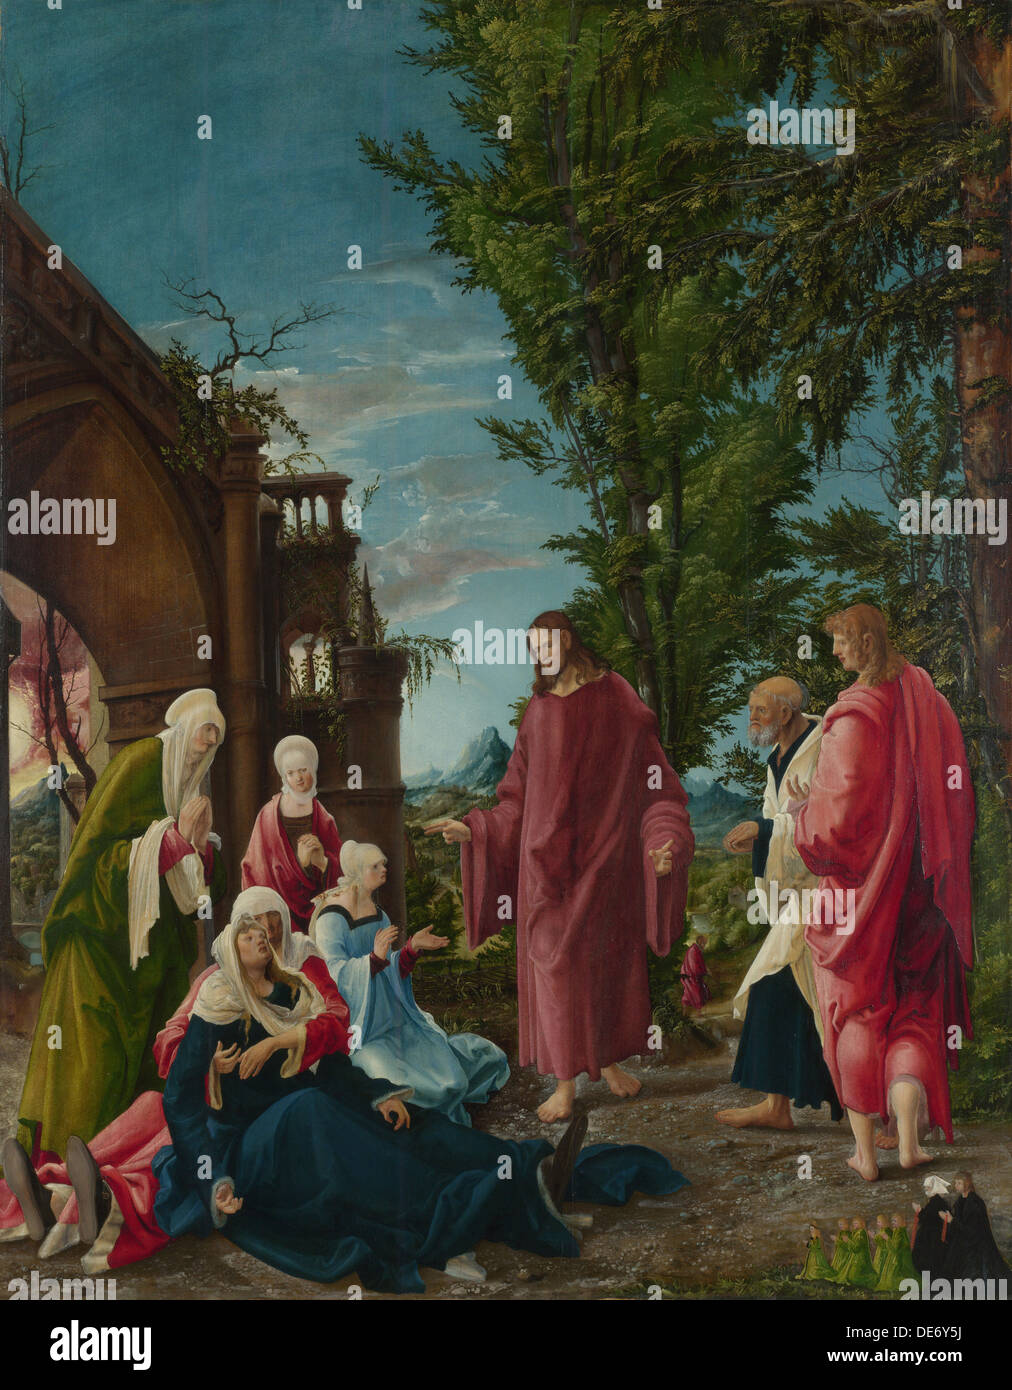 Cristo prendendo congedo da sua madre, c. 1520. Artista: Altdorfer, Albrecht (c. 1480-1538) Foto Stock